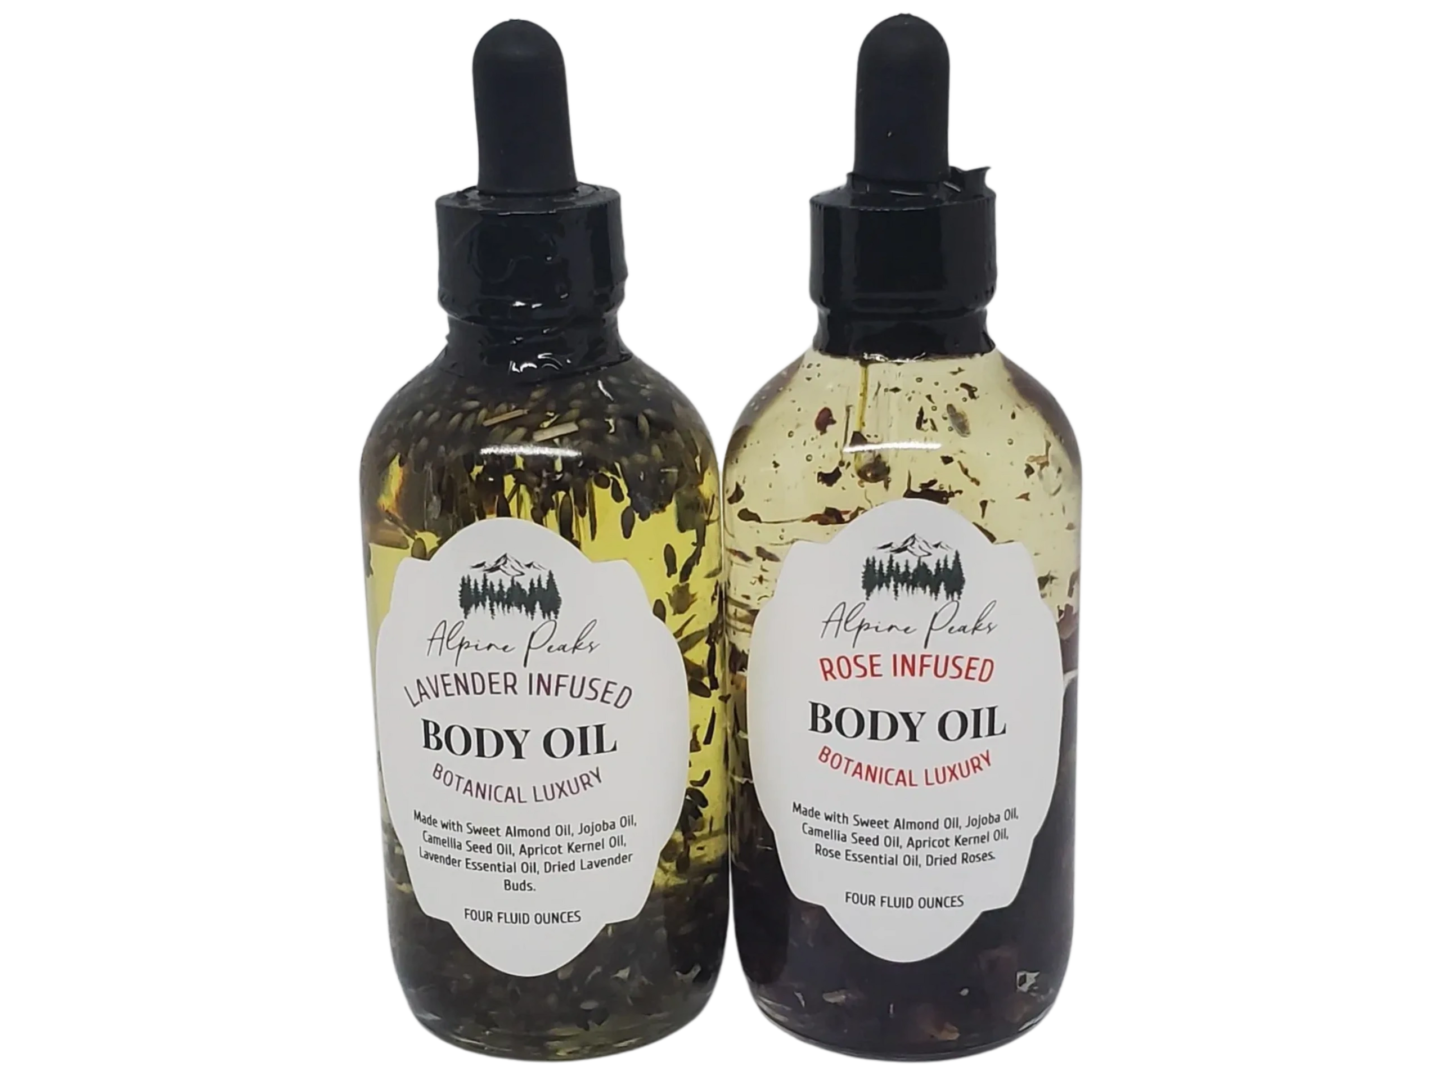 bottles of body oil